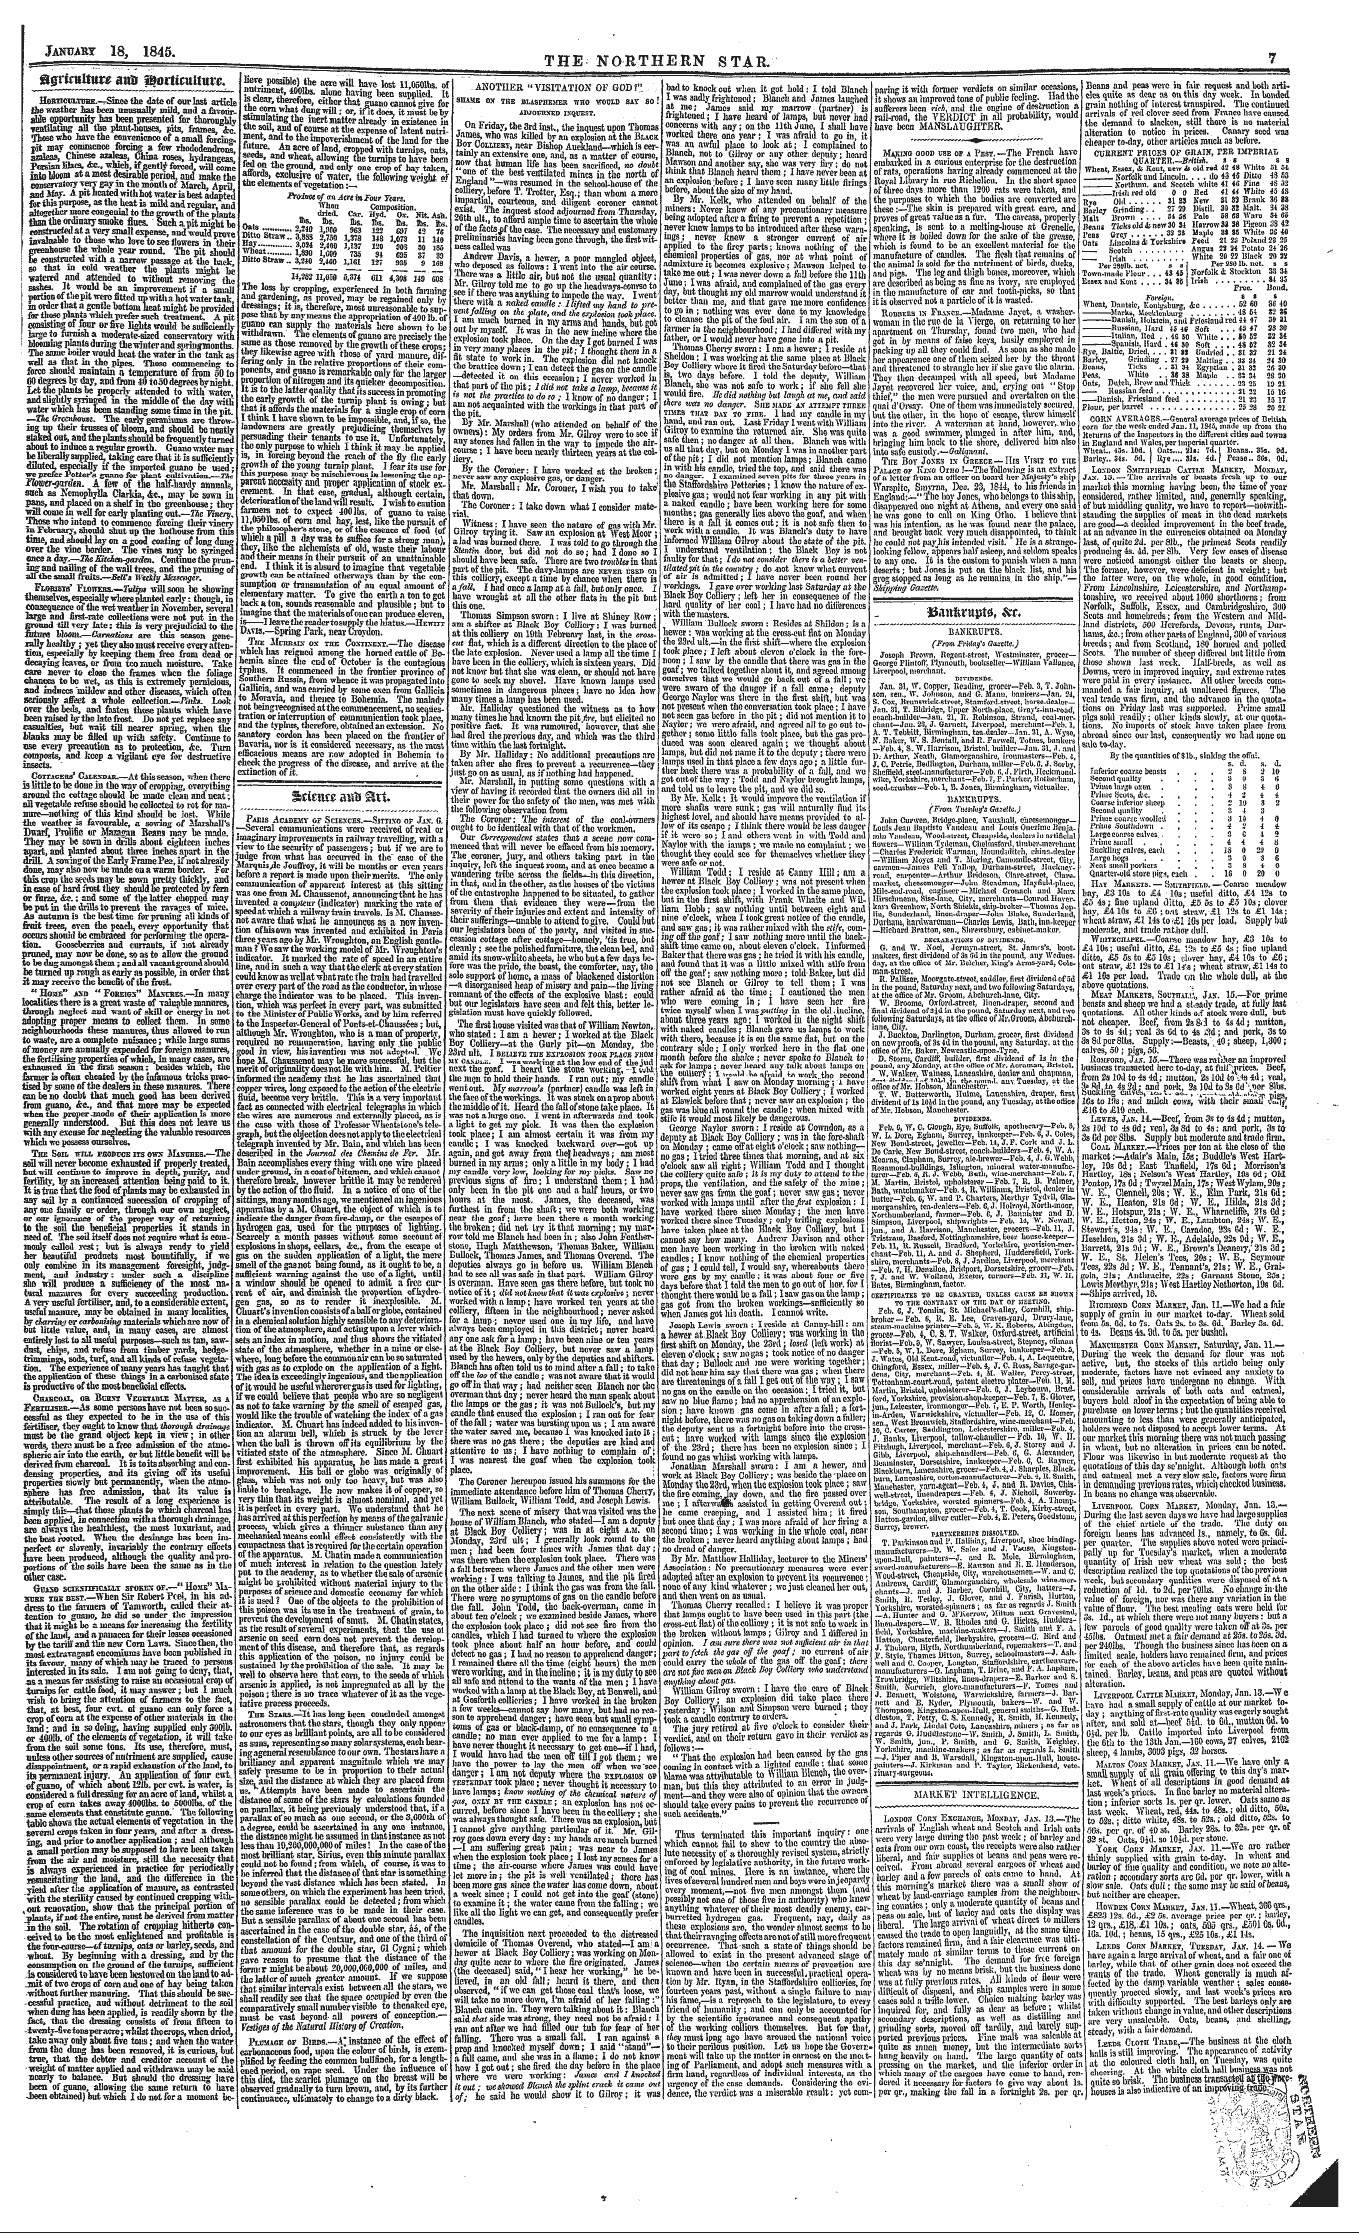 Northern Star (1837-1852): jS F Y, 2nd edition - 33antajjt0, &T